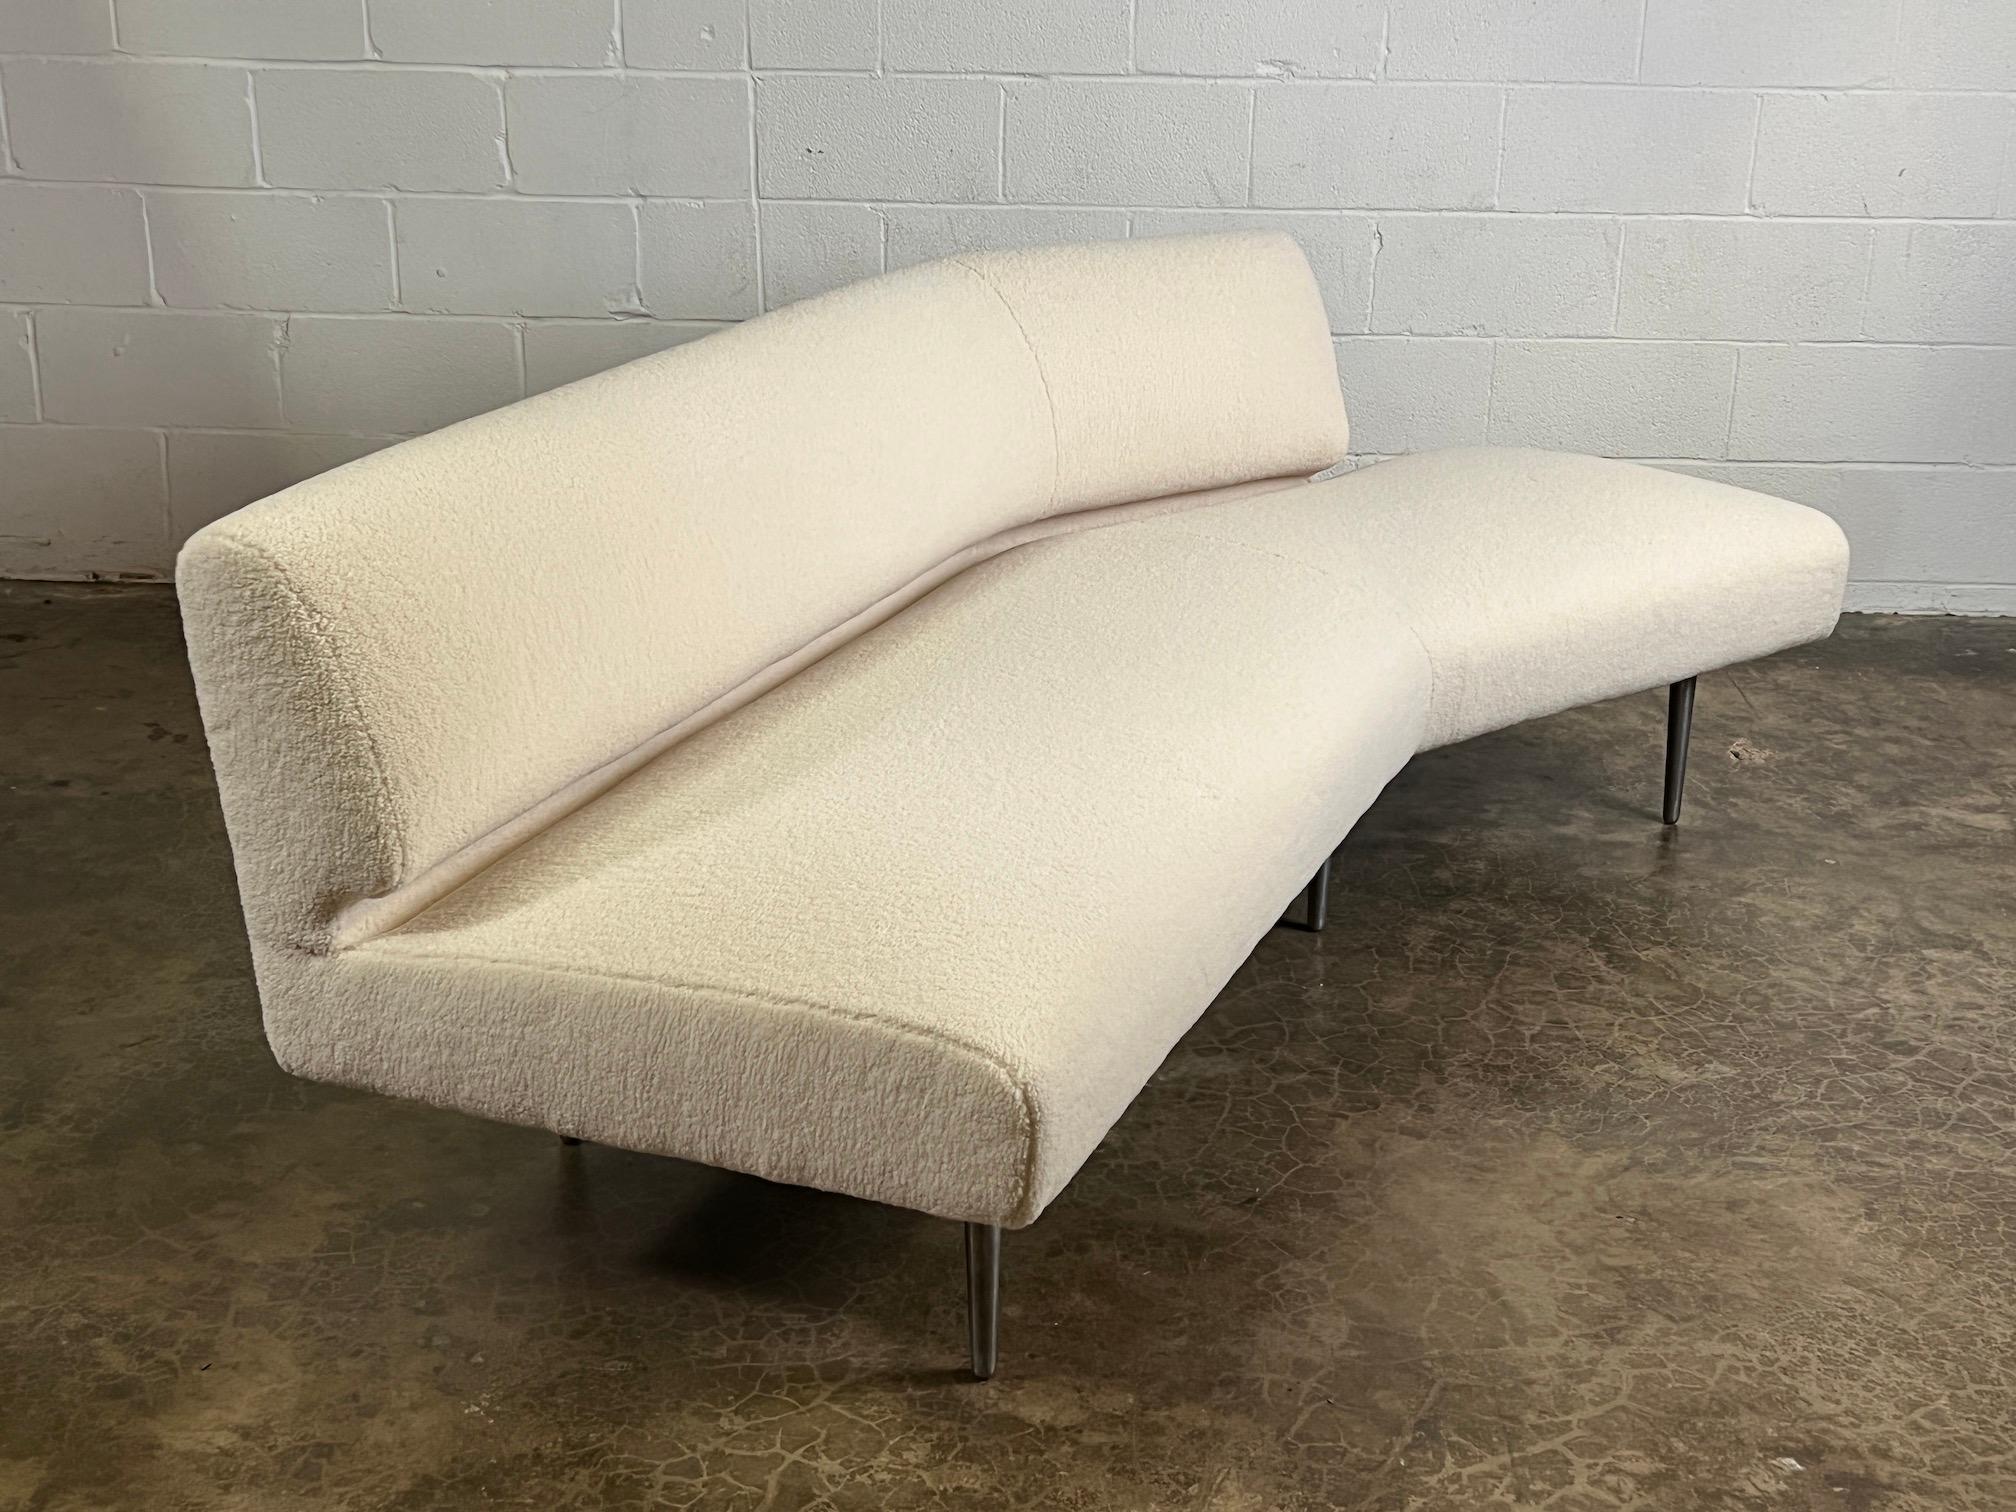 Dunbar Angle Sofa #4756 on Aluminum Legs 12